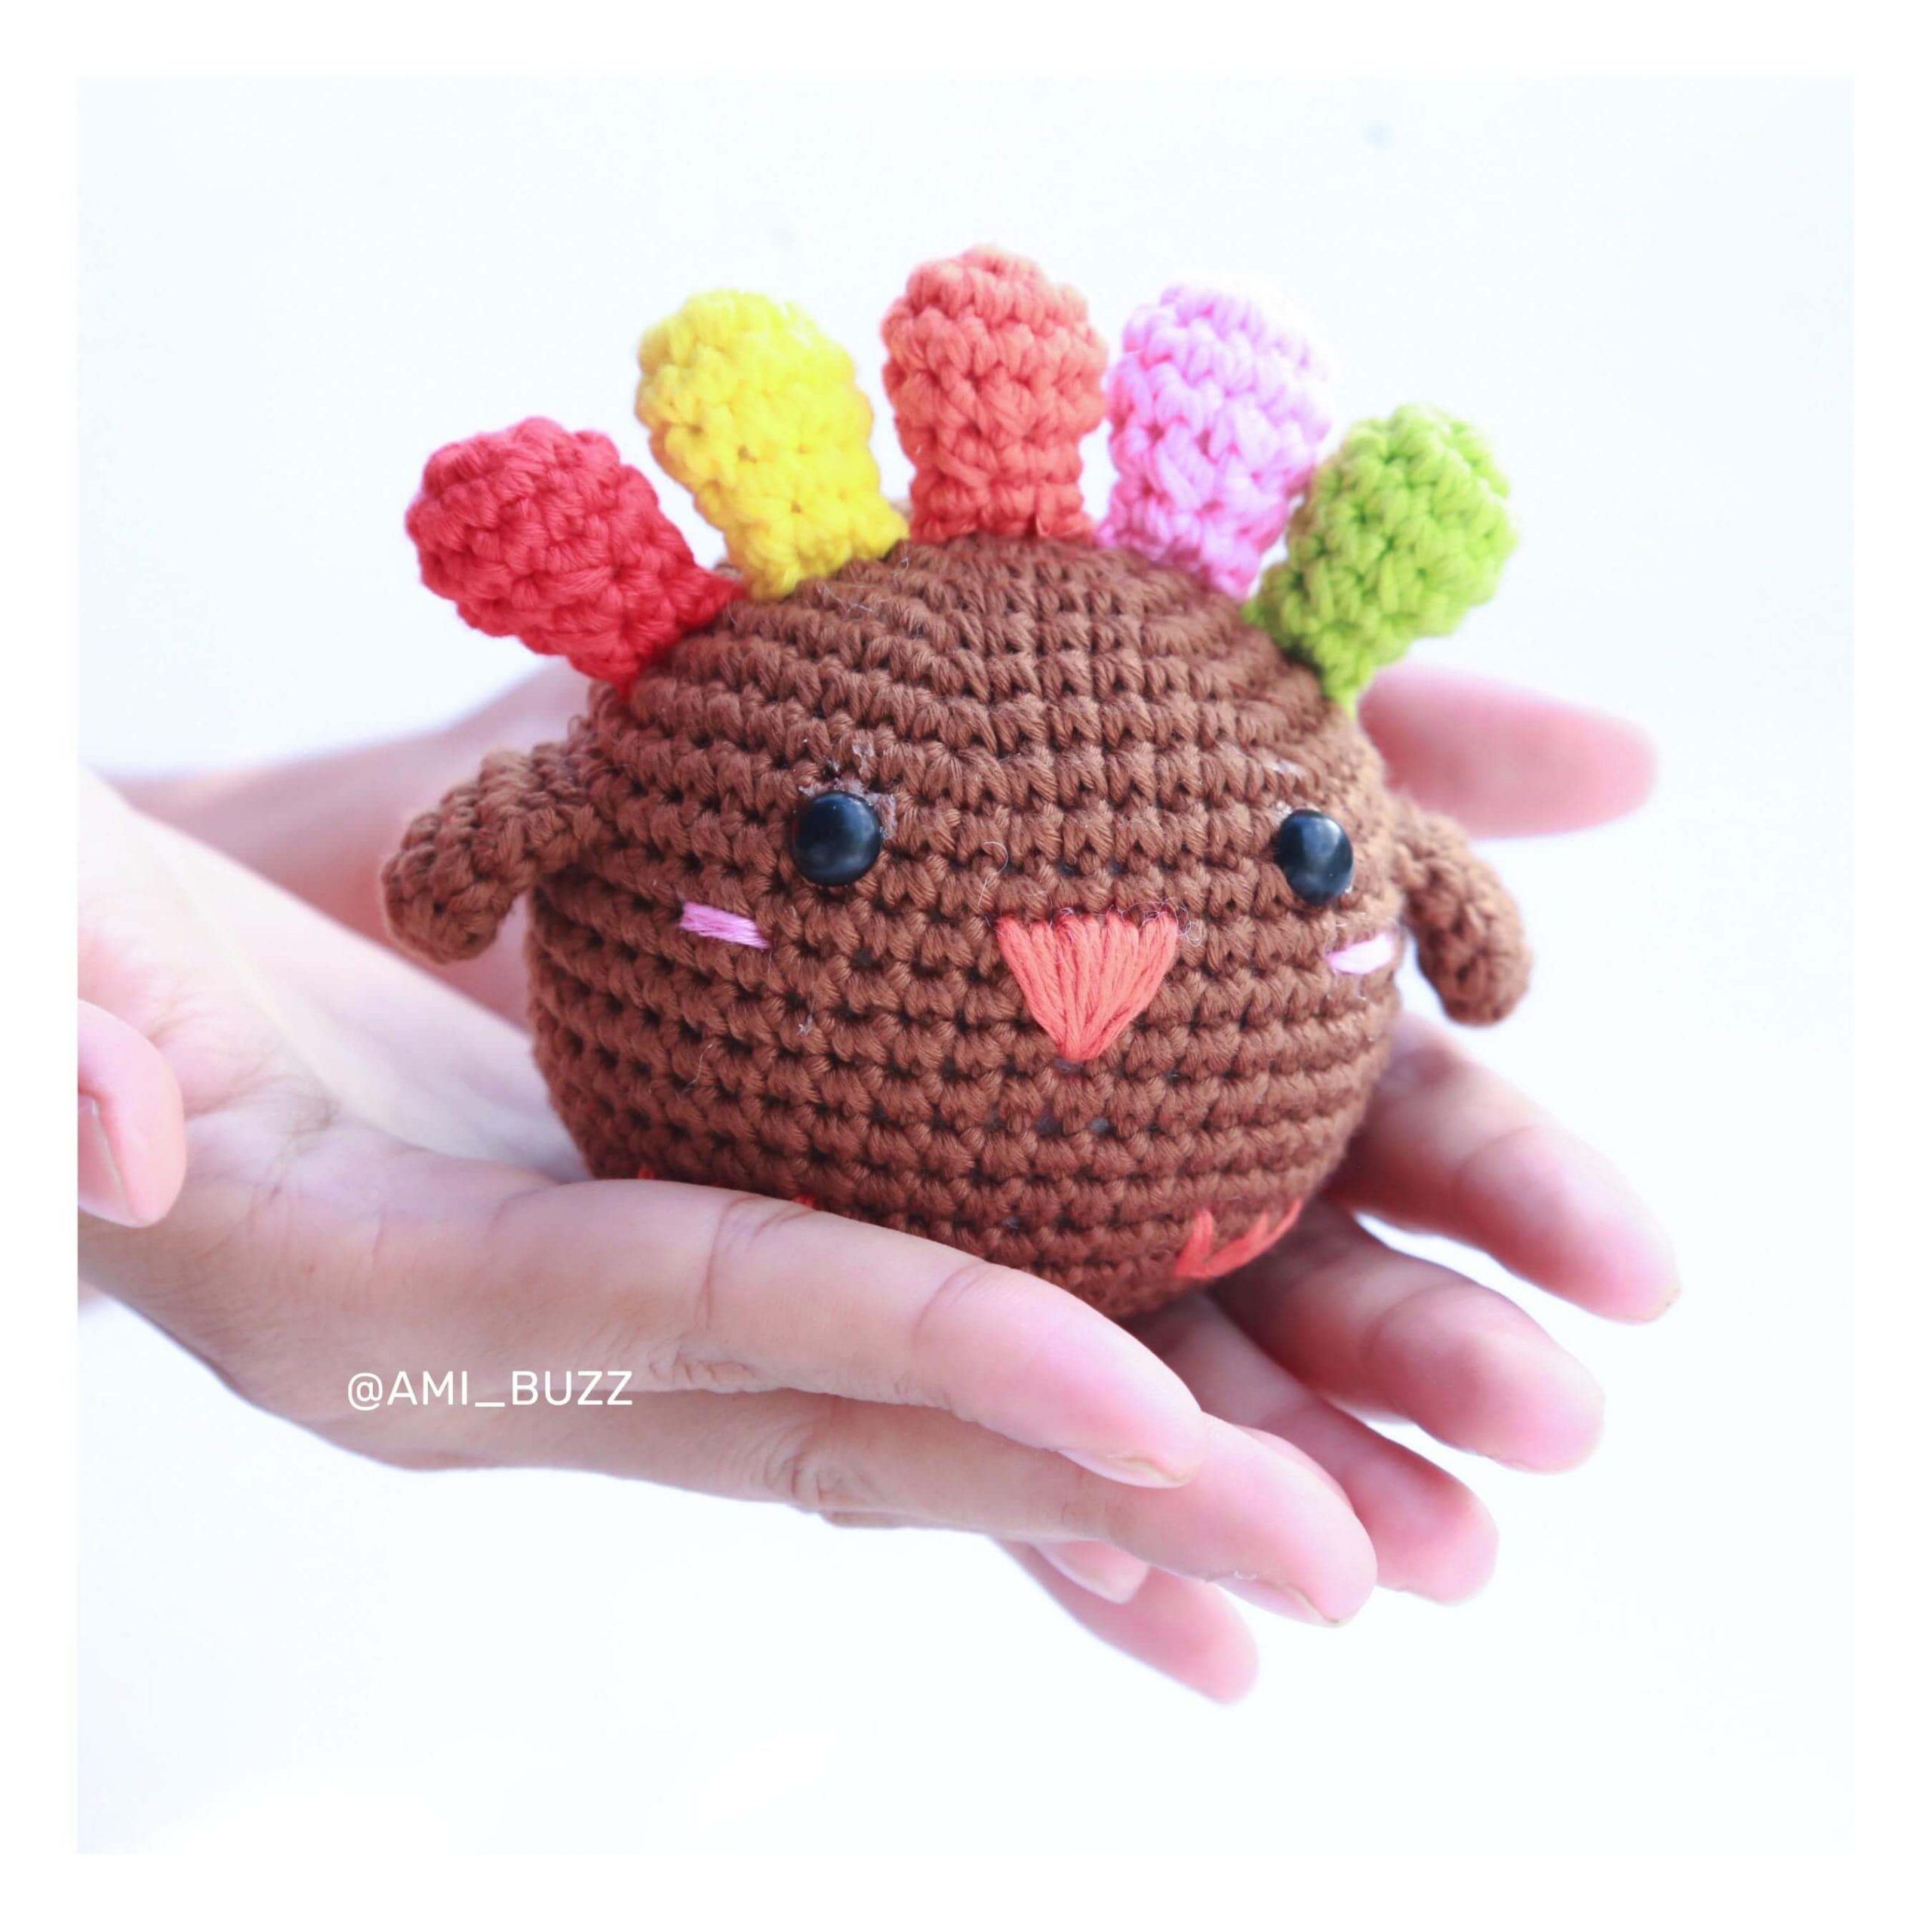 chicken-amigurumi-crochet-pattern-amibuzz (2)